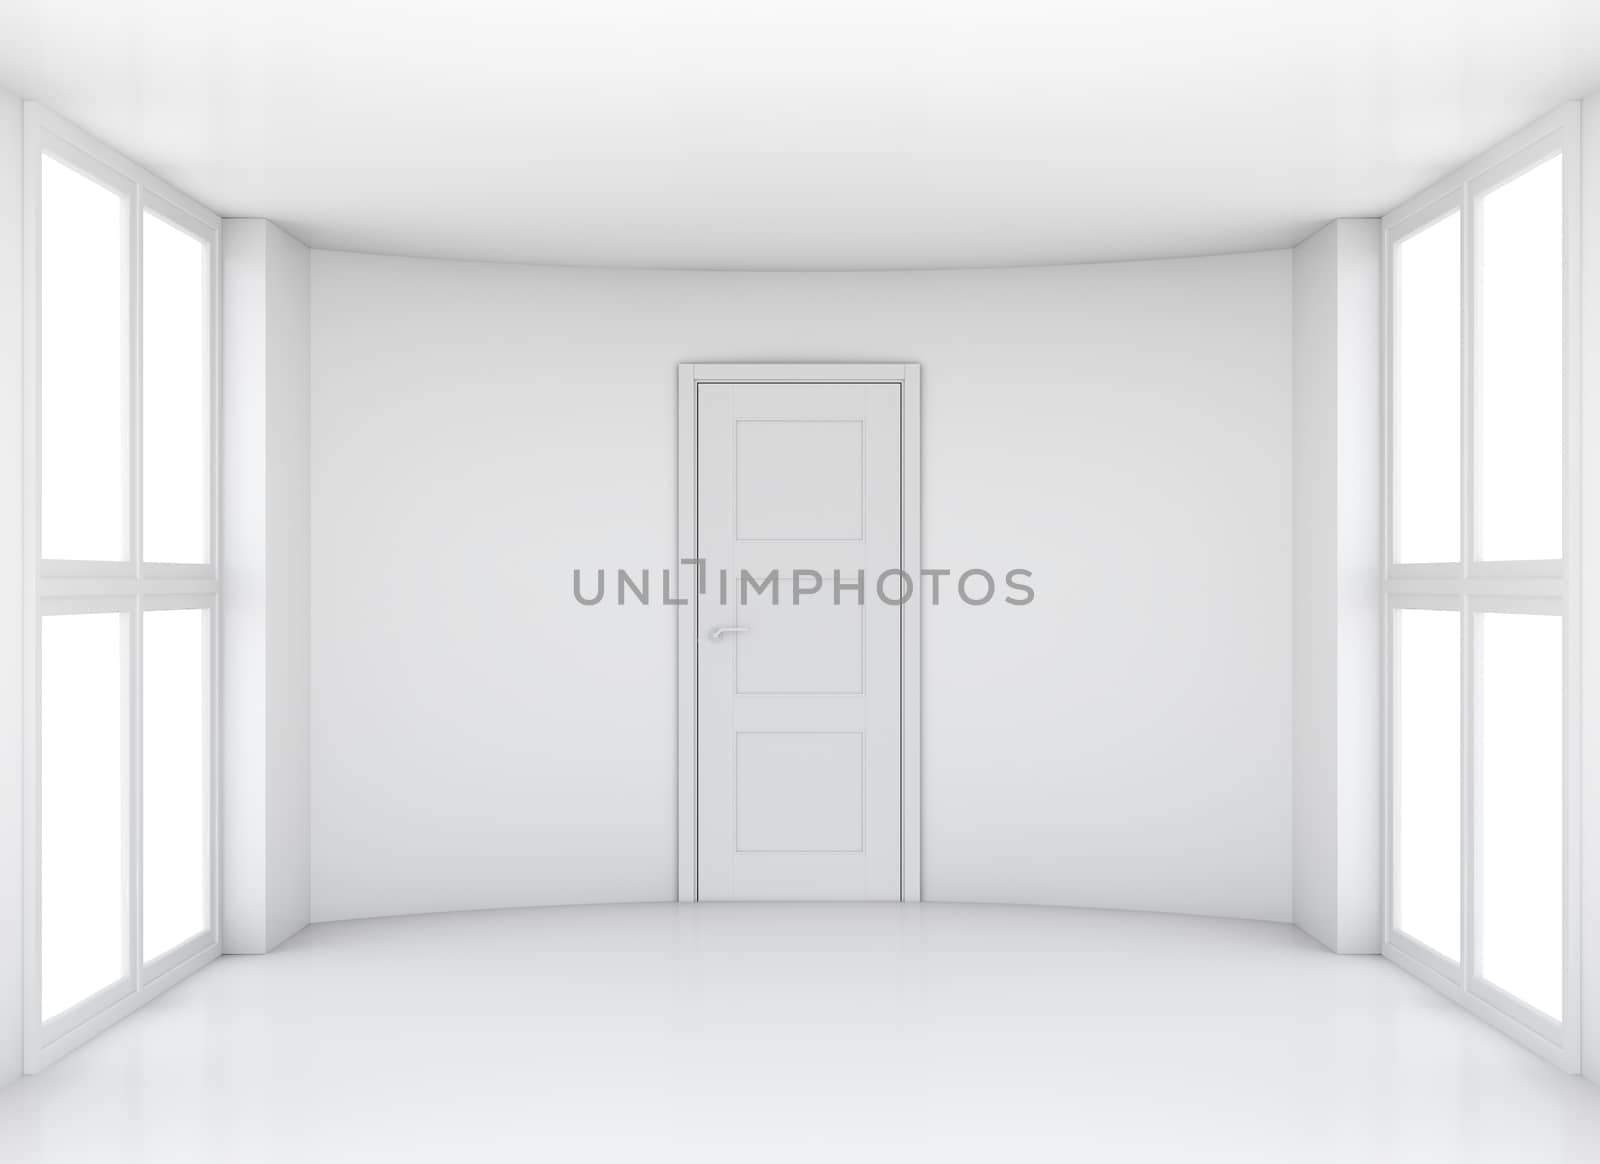 Empty exhibition room with windows and door. 3D rendering